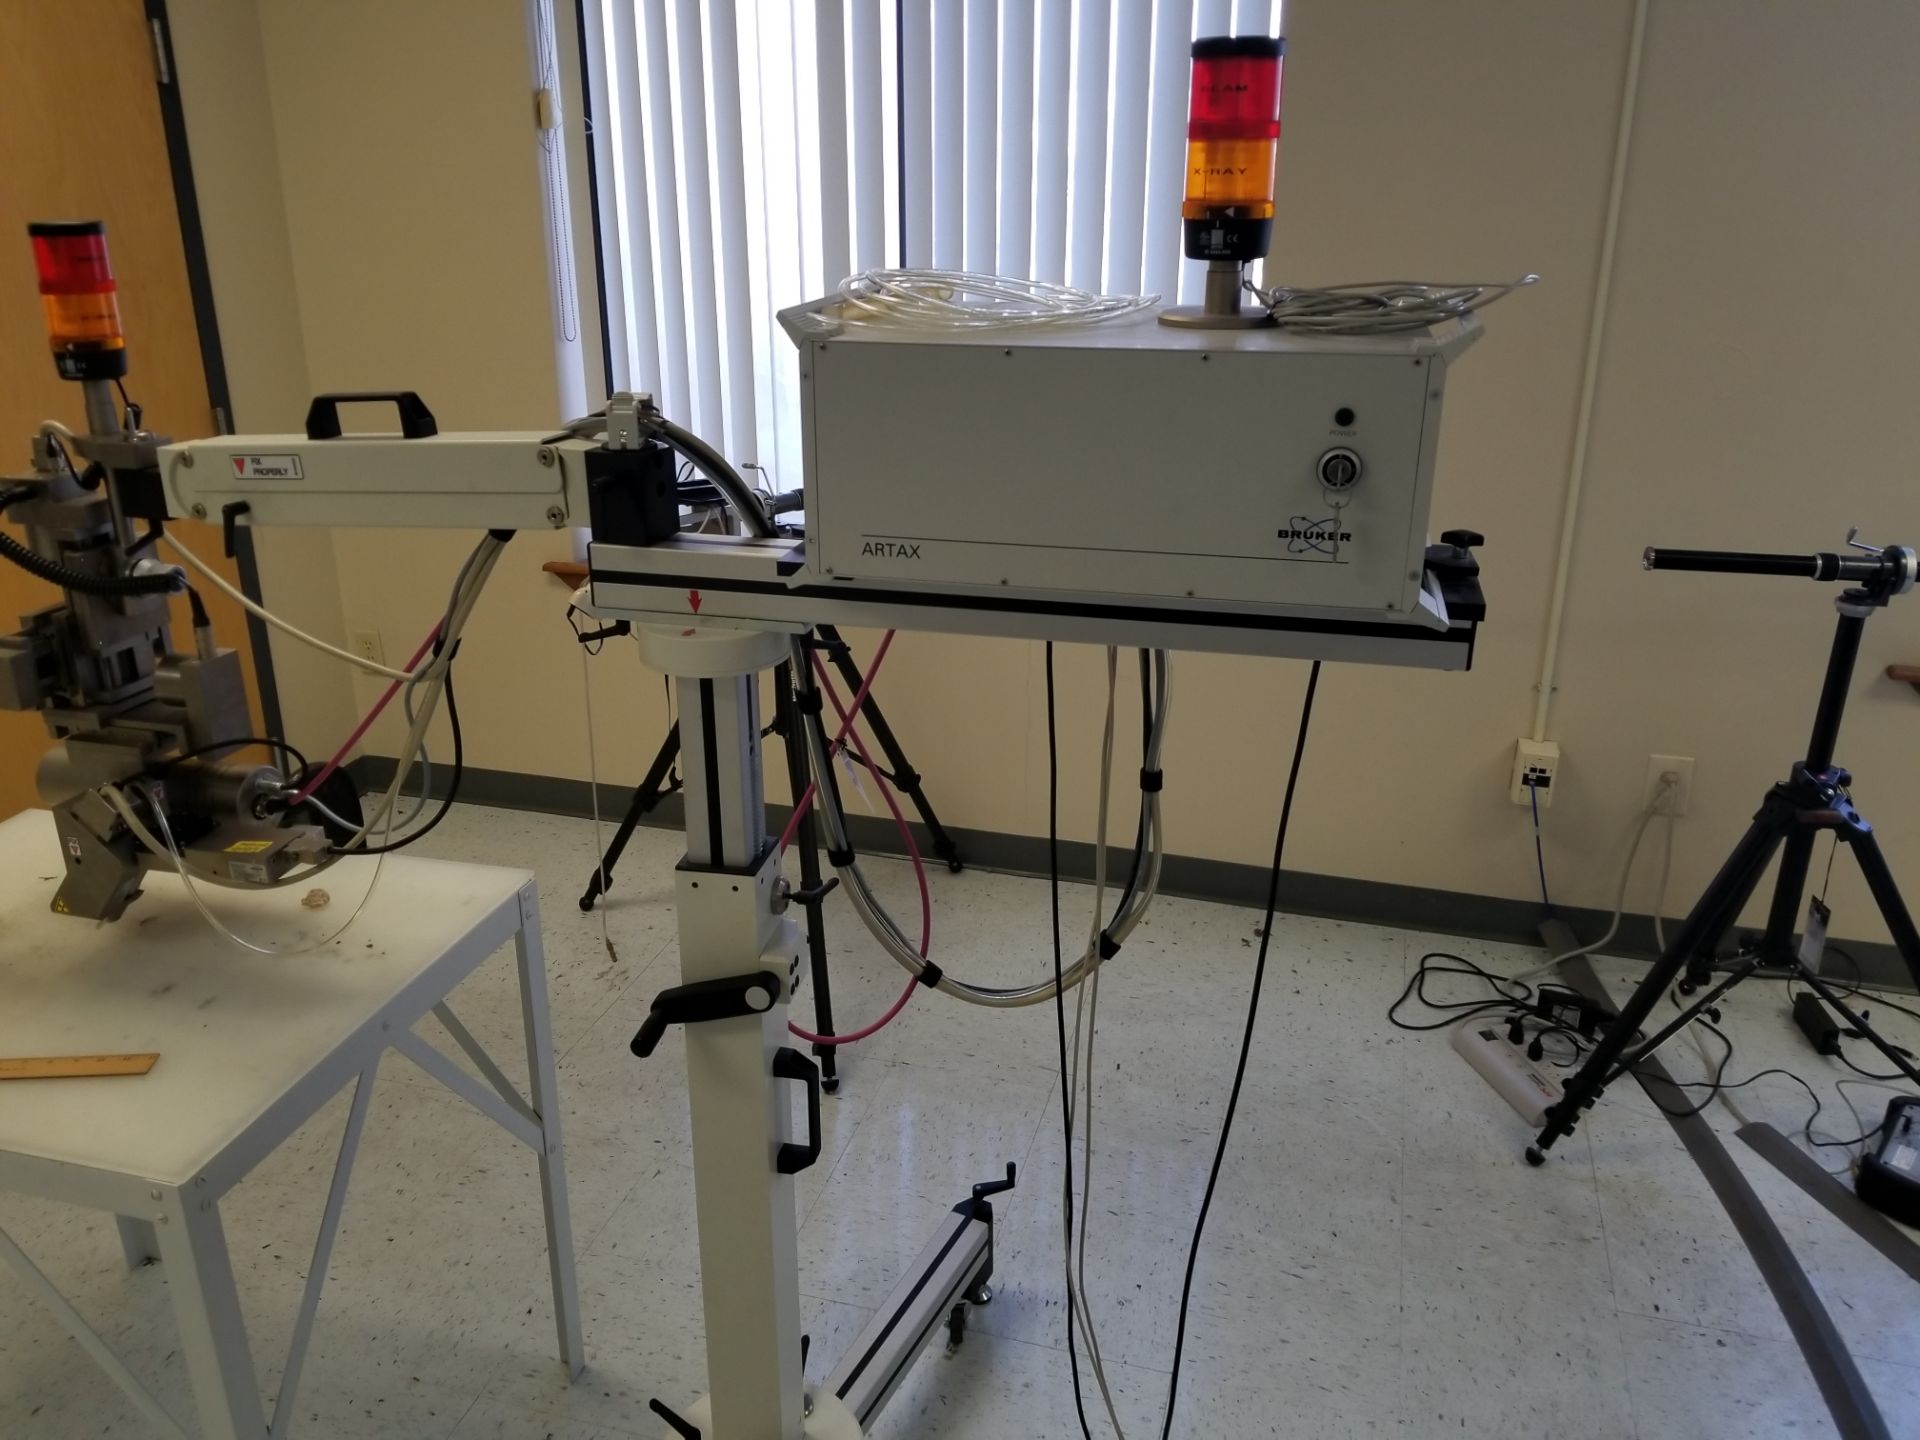 Bruker ARTAX uXRF Spectrometer - Image 6 of 15